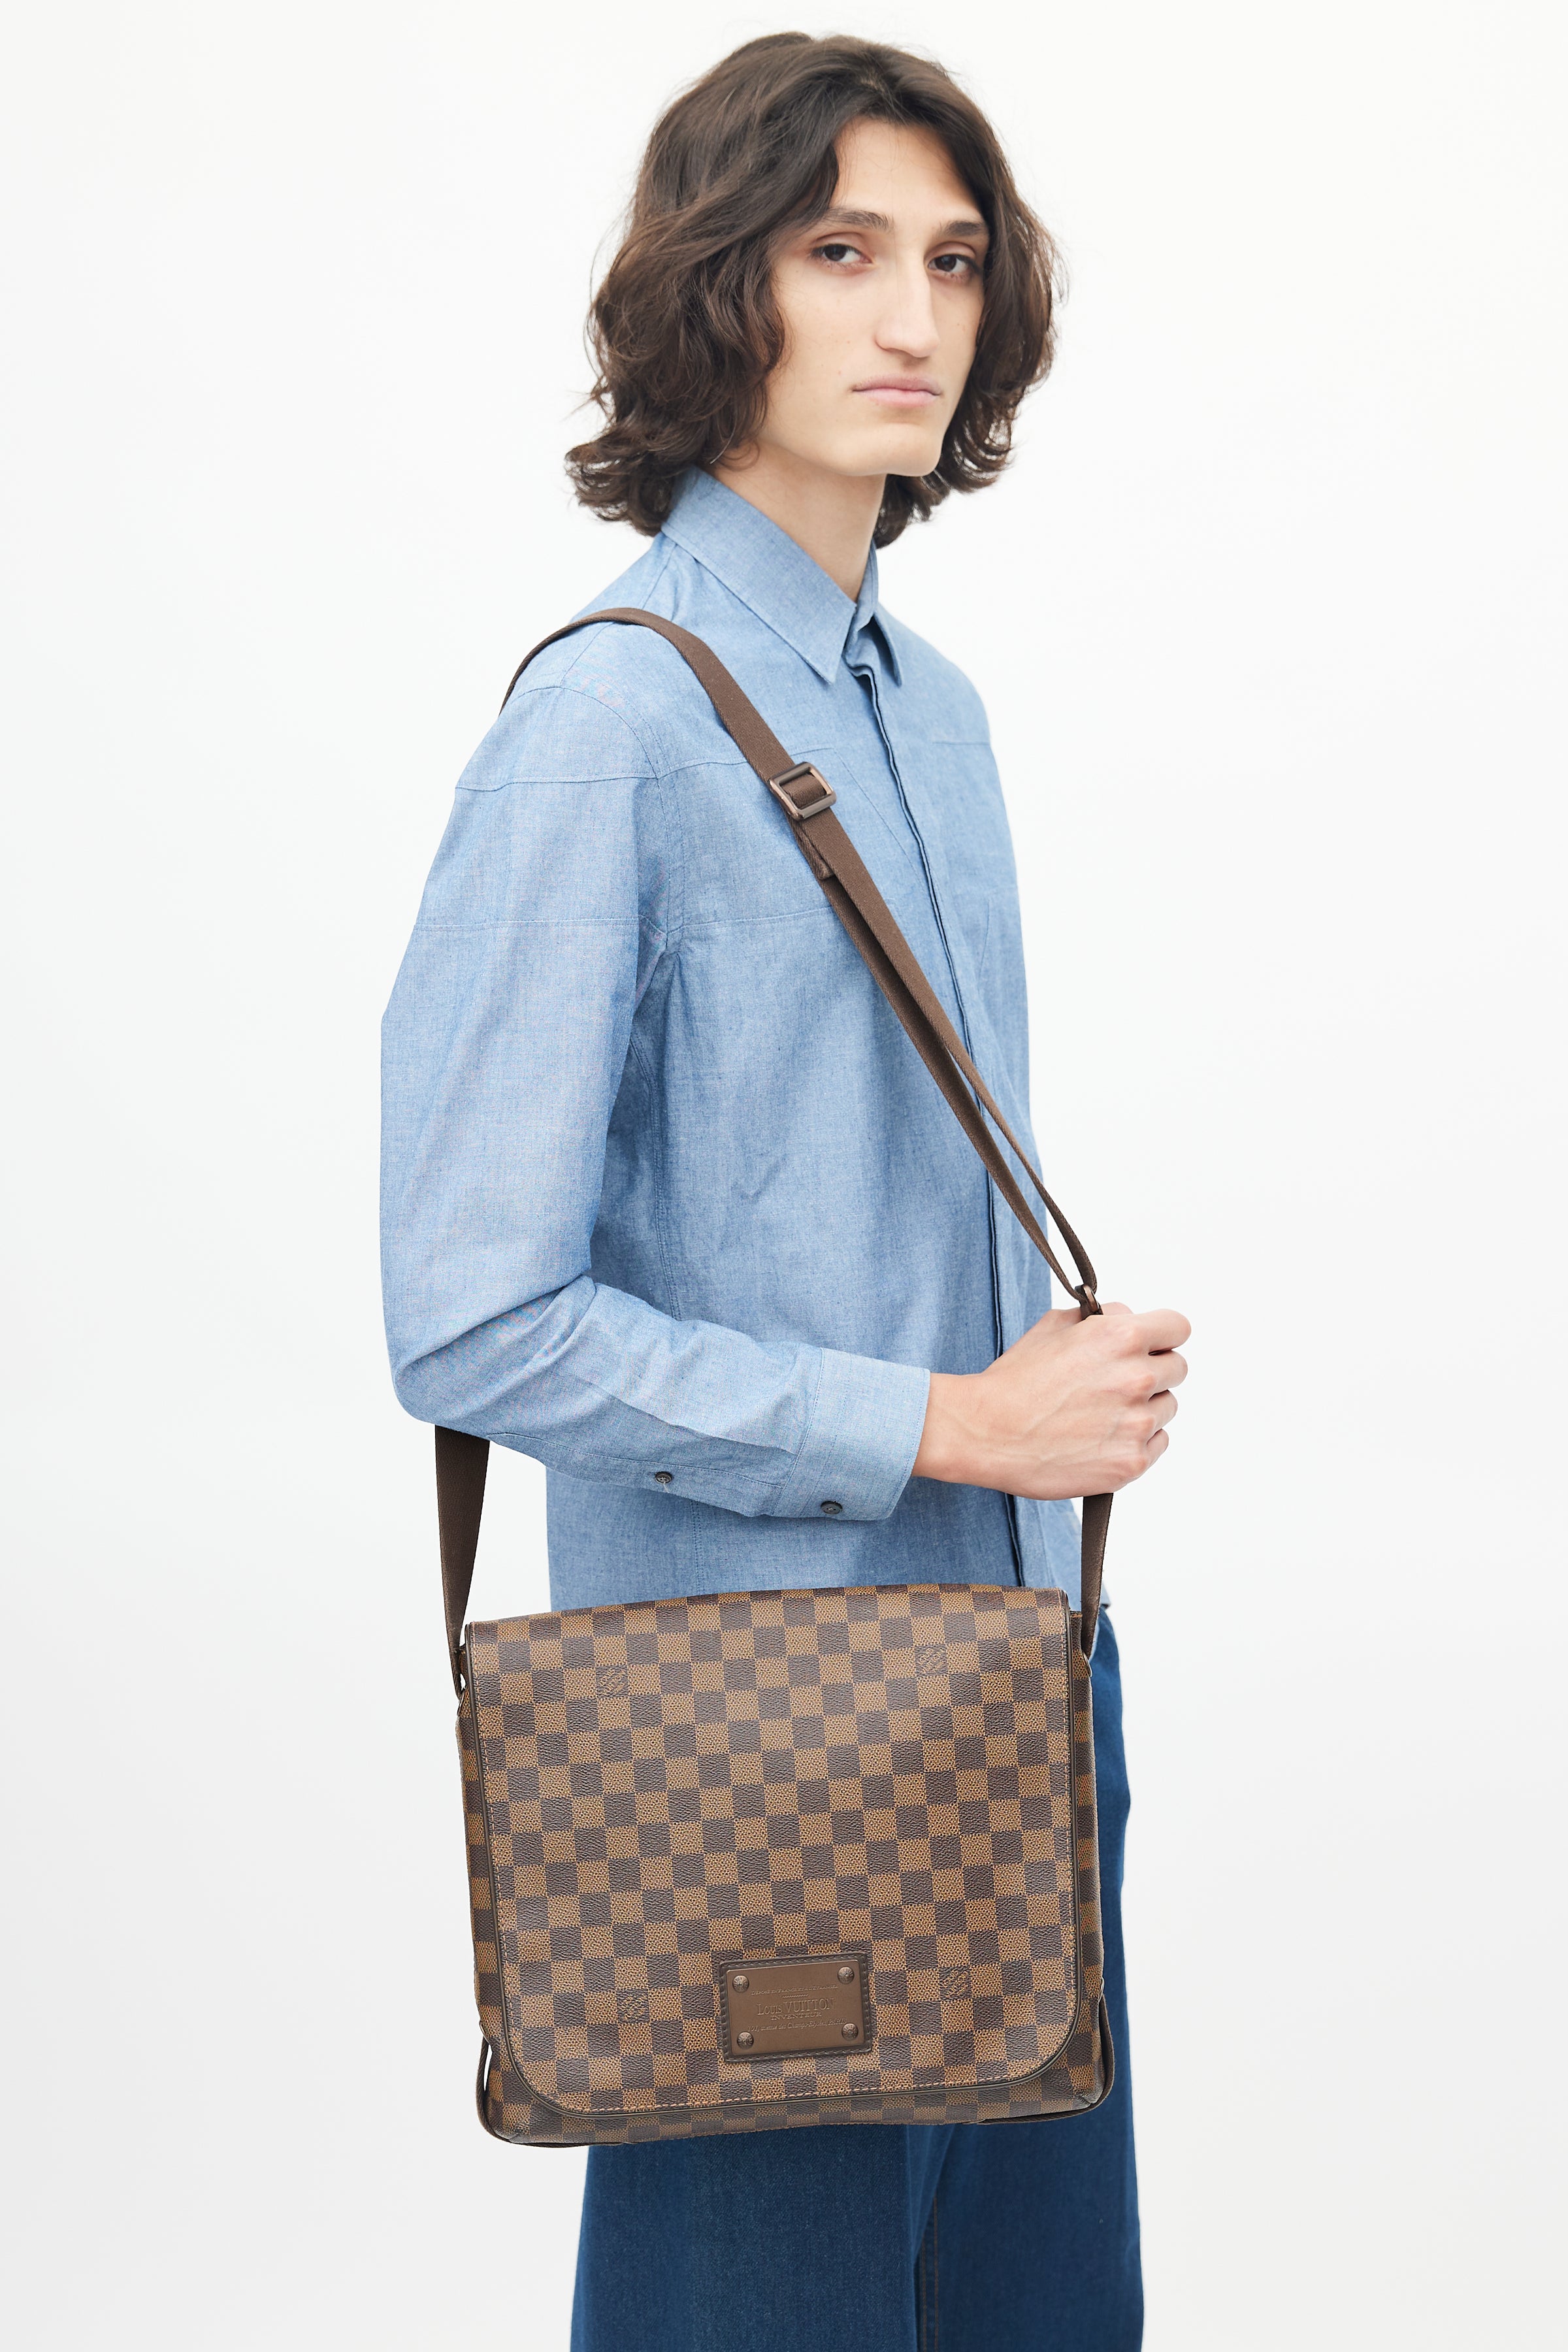 Louis Vuitton, Bags, Authentic Louis Vuitton Damier Brooklyn Gm Messenger